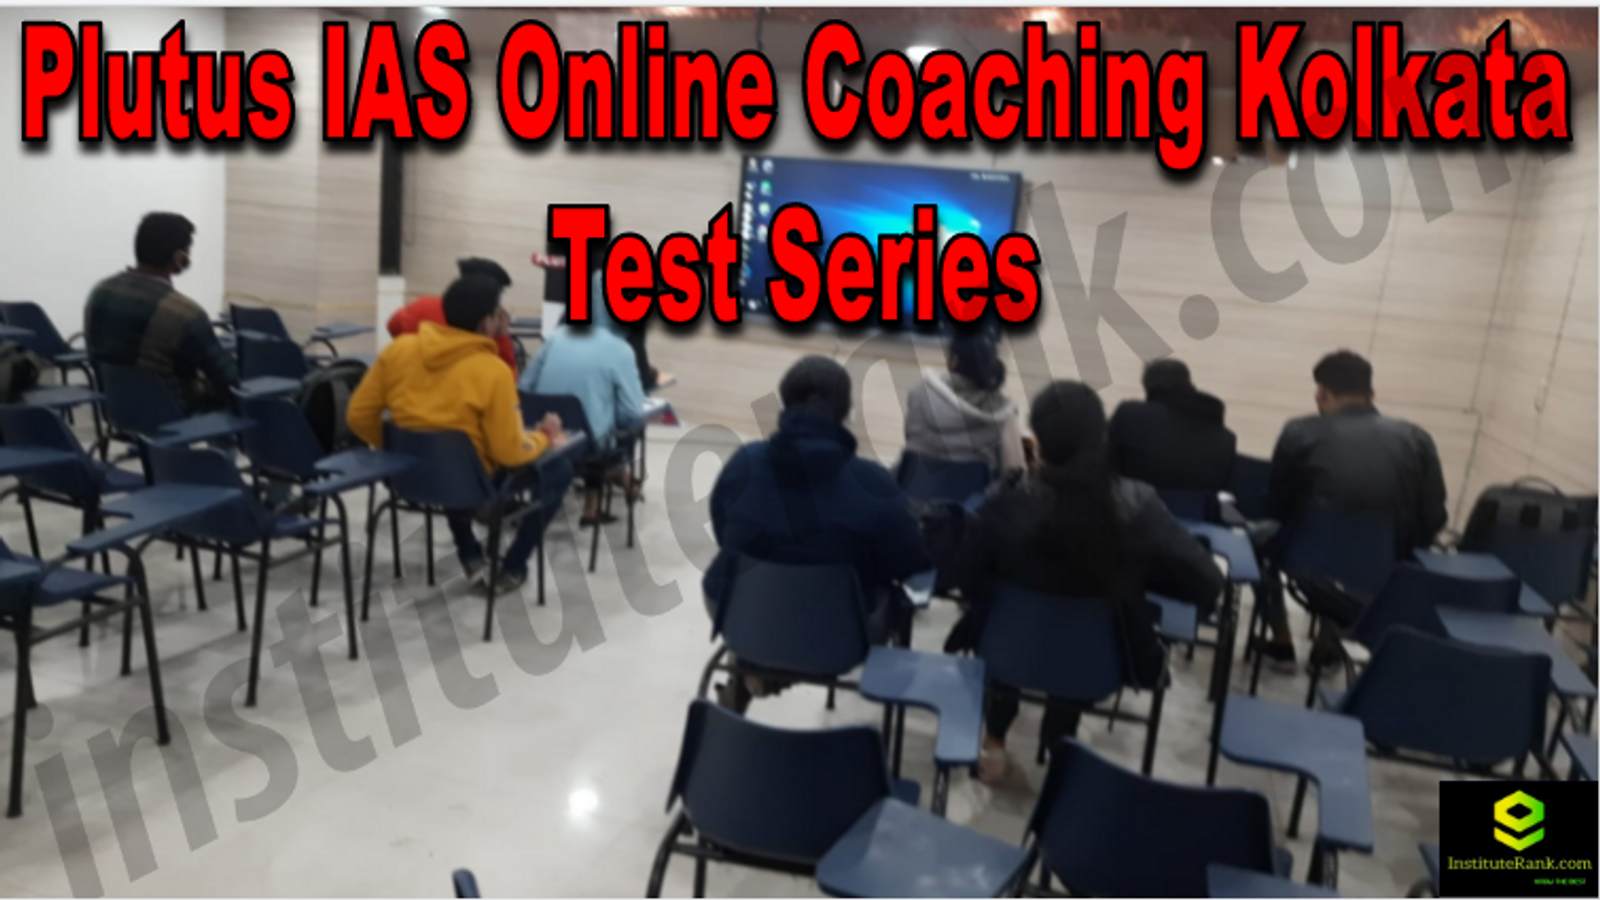 Plutus IAS Online Coaching Kolkata Test-Series